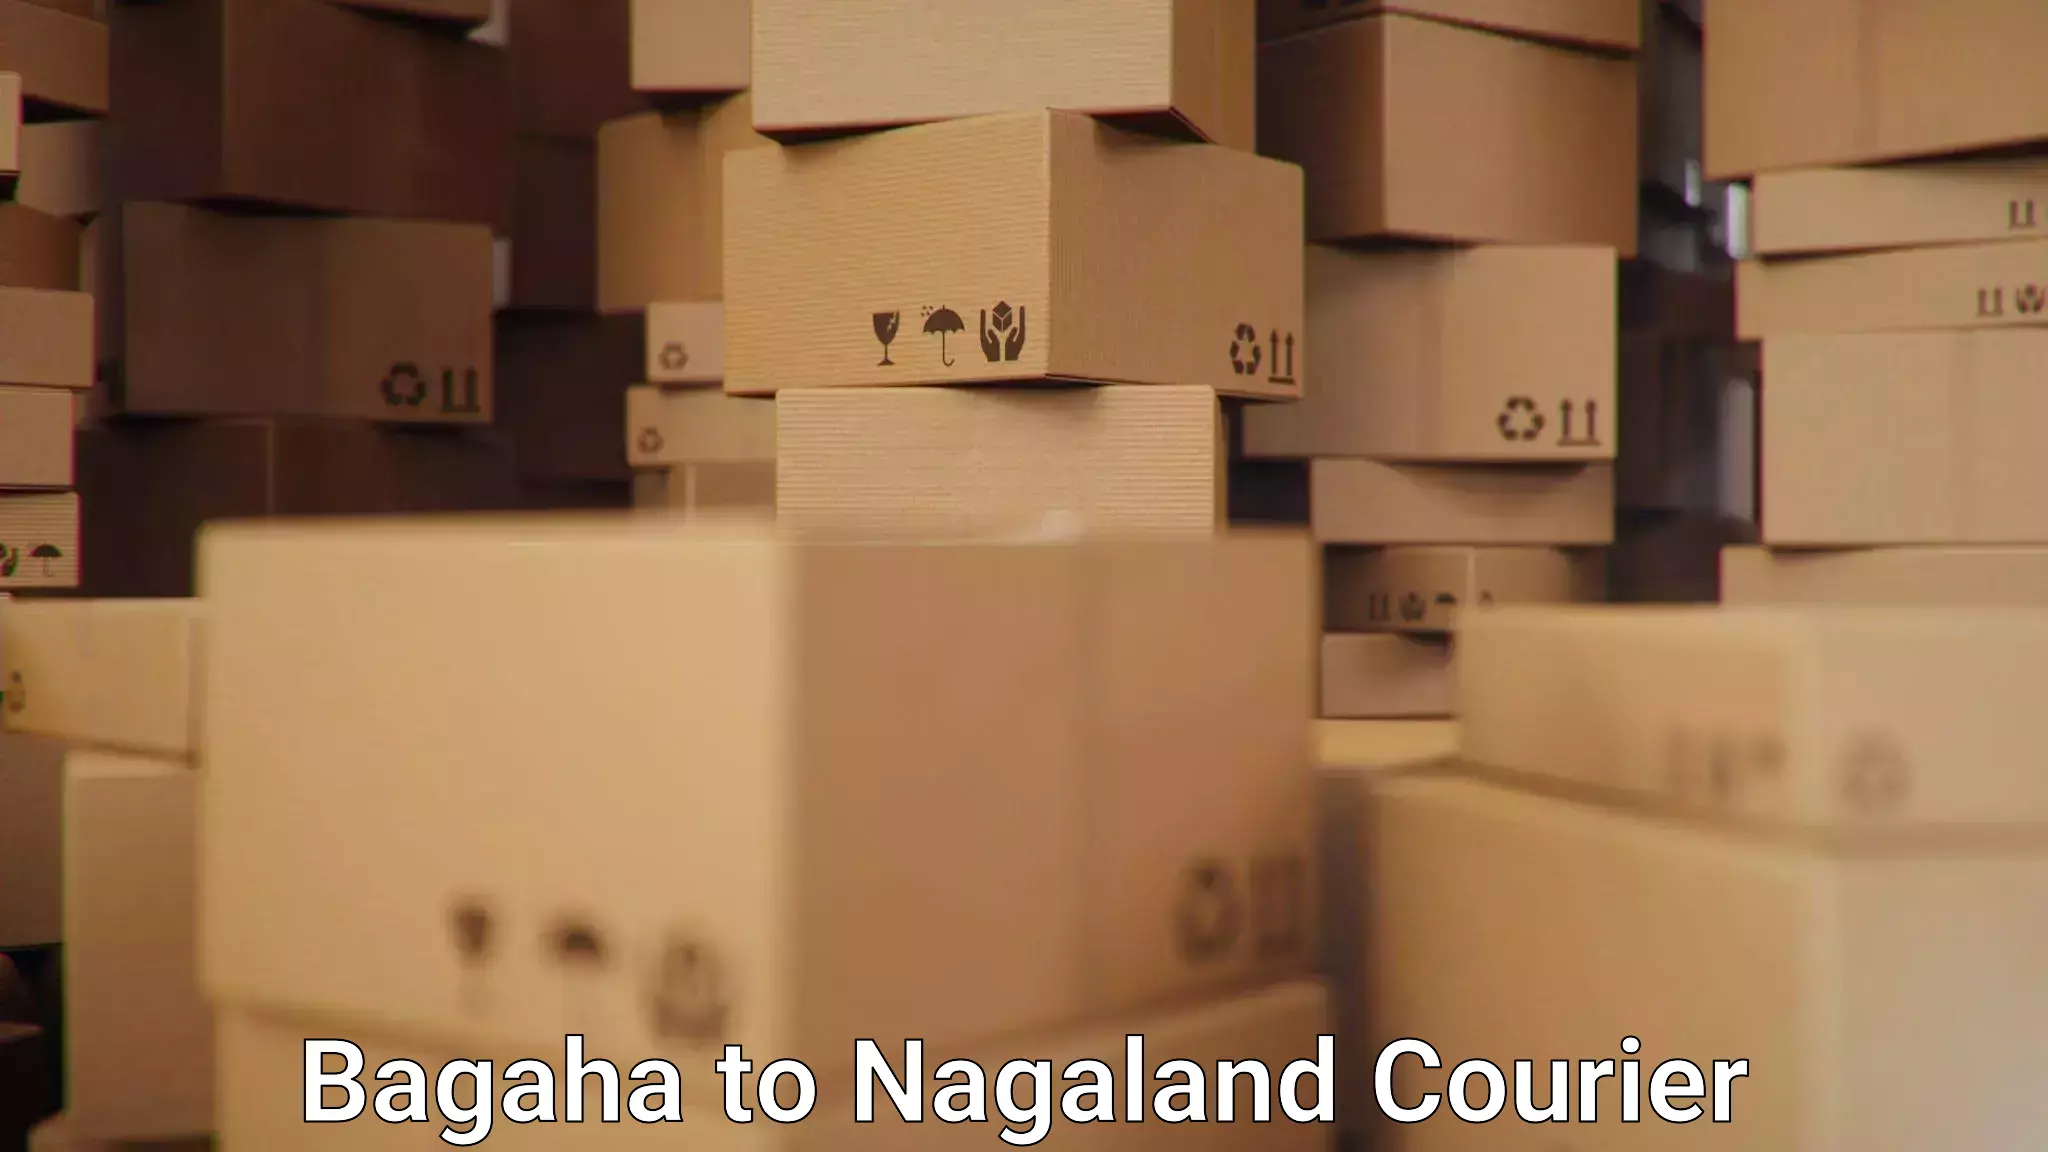 Nationwide shipping services Bagaha to NIT Nagaland